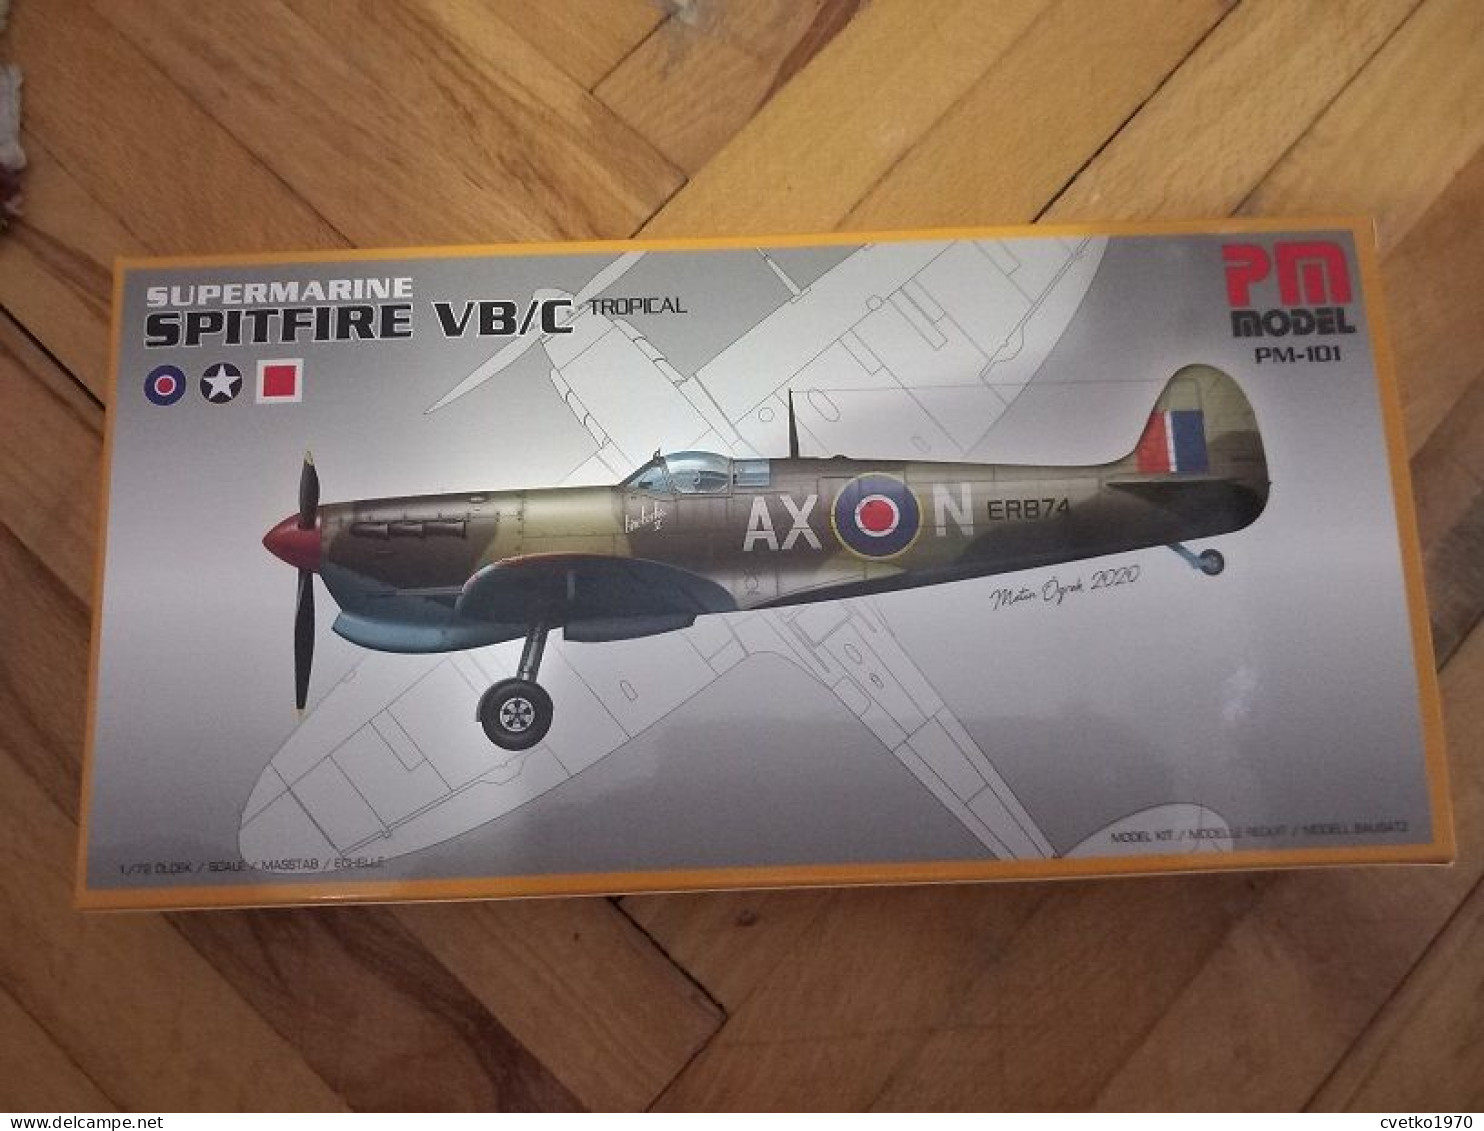 Supermarine Spitfire VB/C Tropical, 1/72, PM Model - Luchtvaart